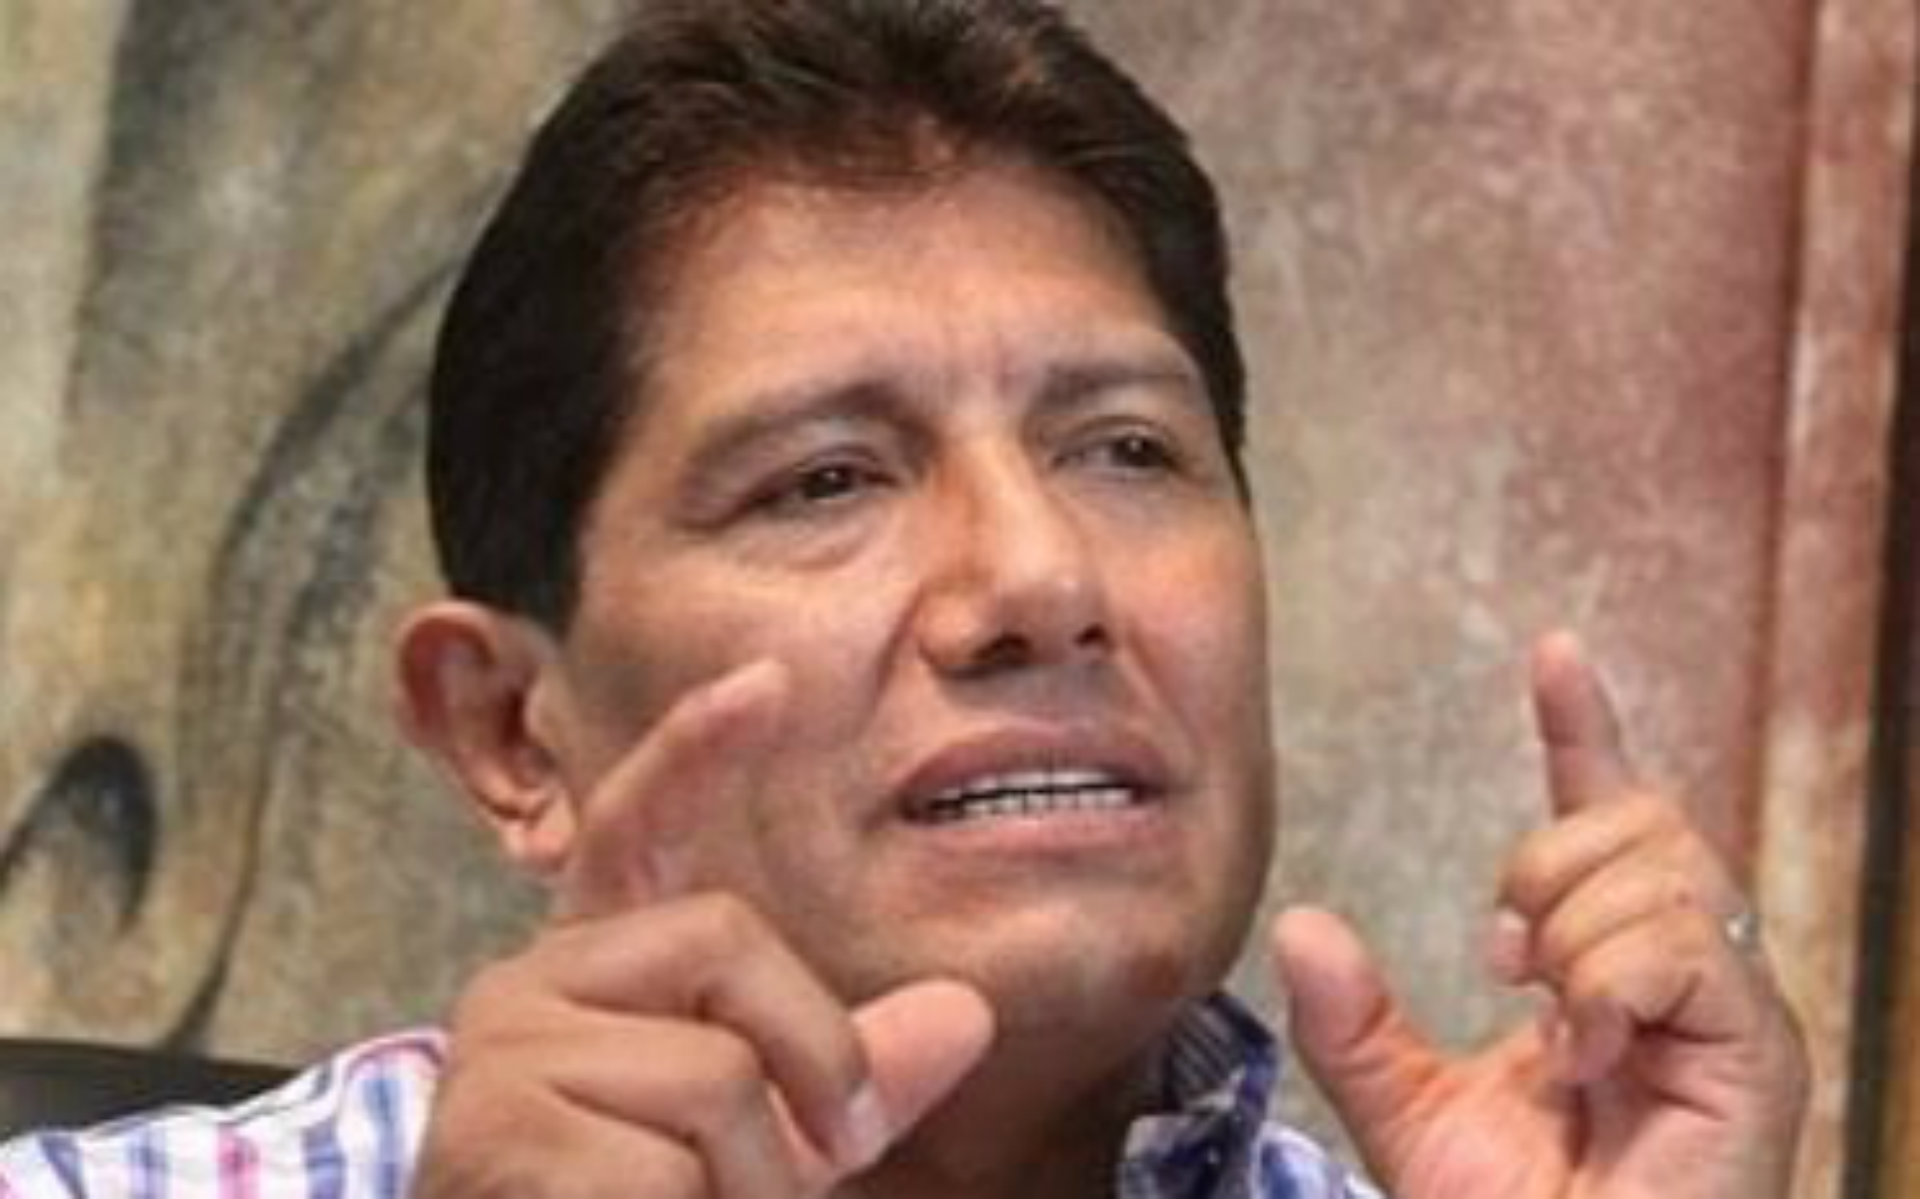 “Les prometo echarle muchas ganas”: las palabras de Juan Osorio tras dar positivo a COVID-19